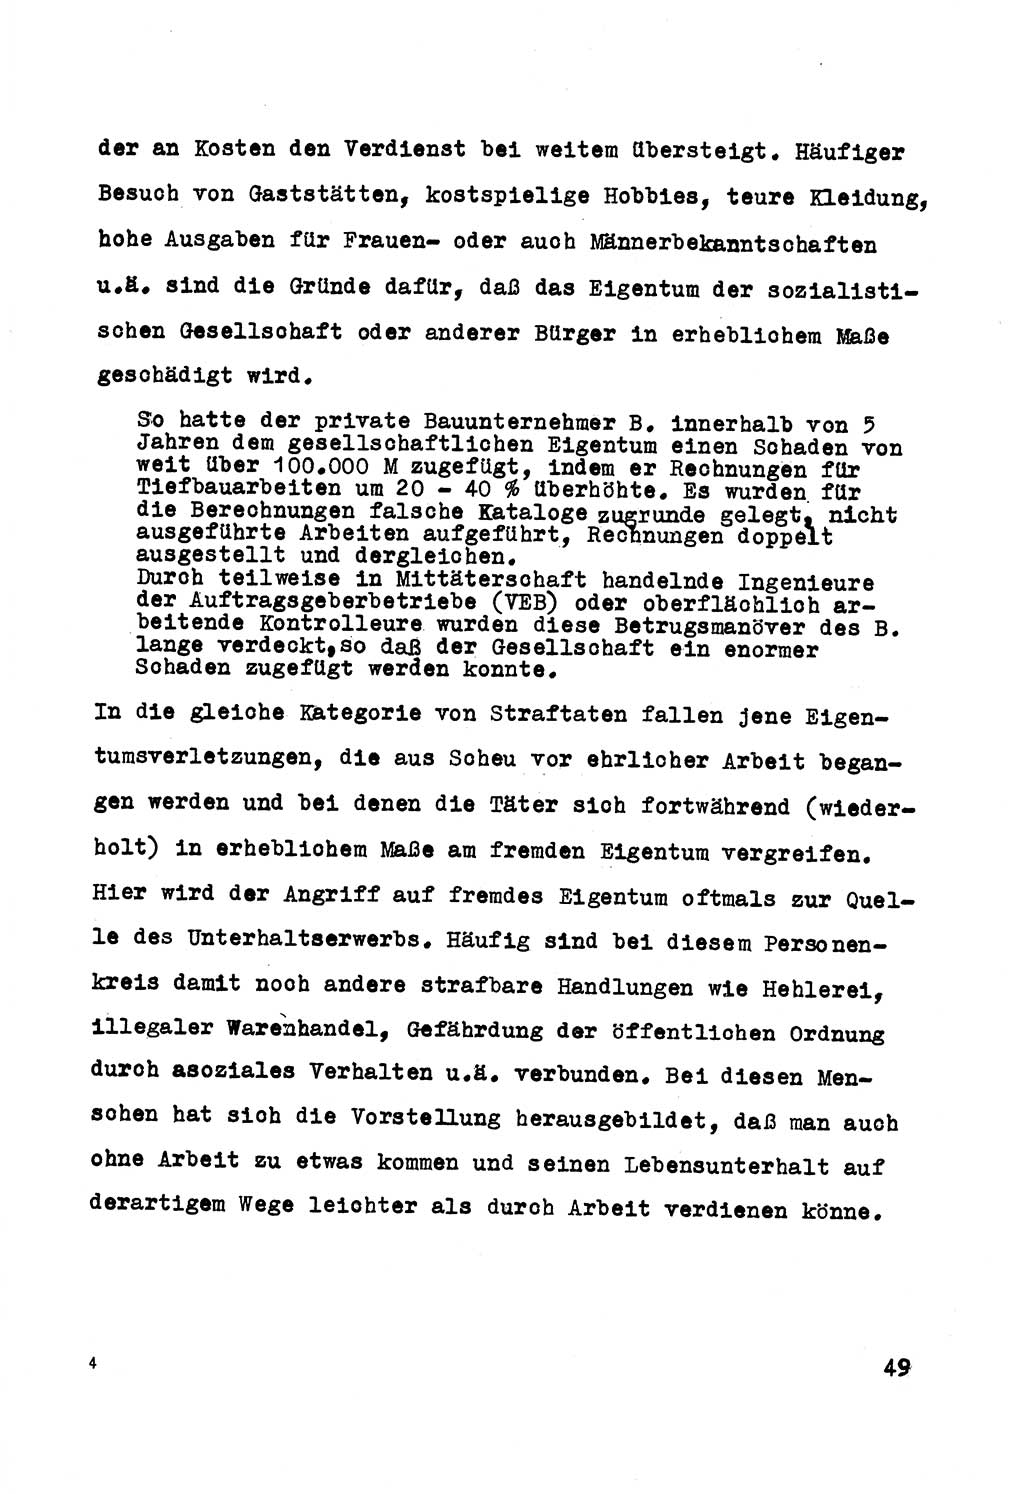 Strafrecht der DDR (Deutsche Demokratische Republik), Besonderer Teil, Lehrmaterial, Heft 5 1970, Seite 49 (Strafr. DDR BT Lehrmat. H. 5 1970, S. 49)